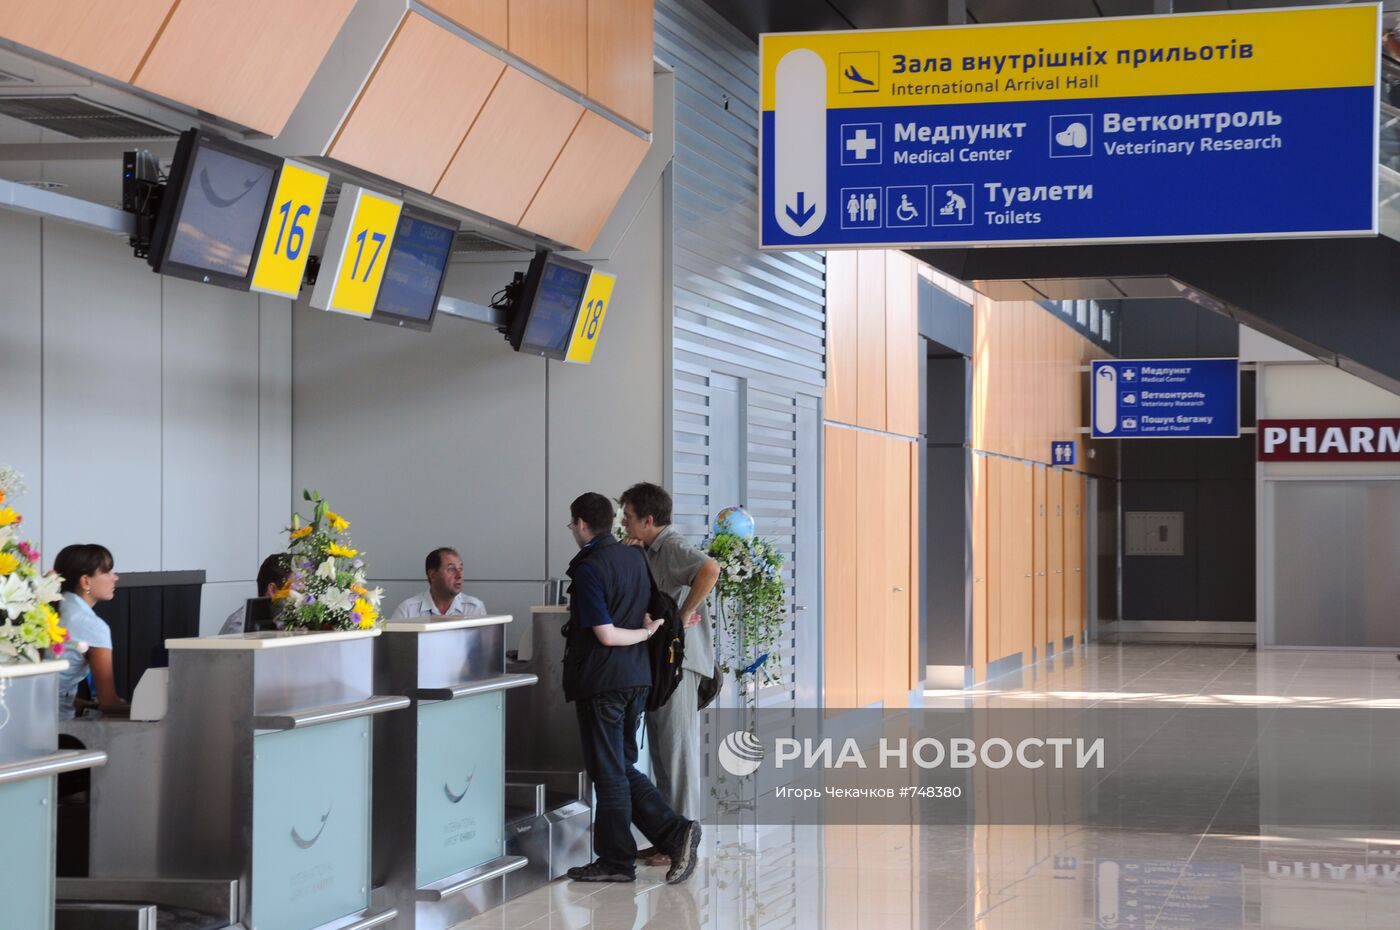 Открытие нового терминала международного аэропорта "Харьков"